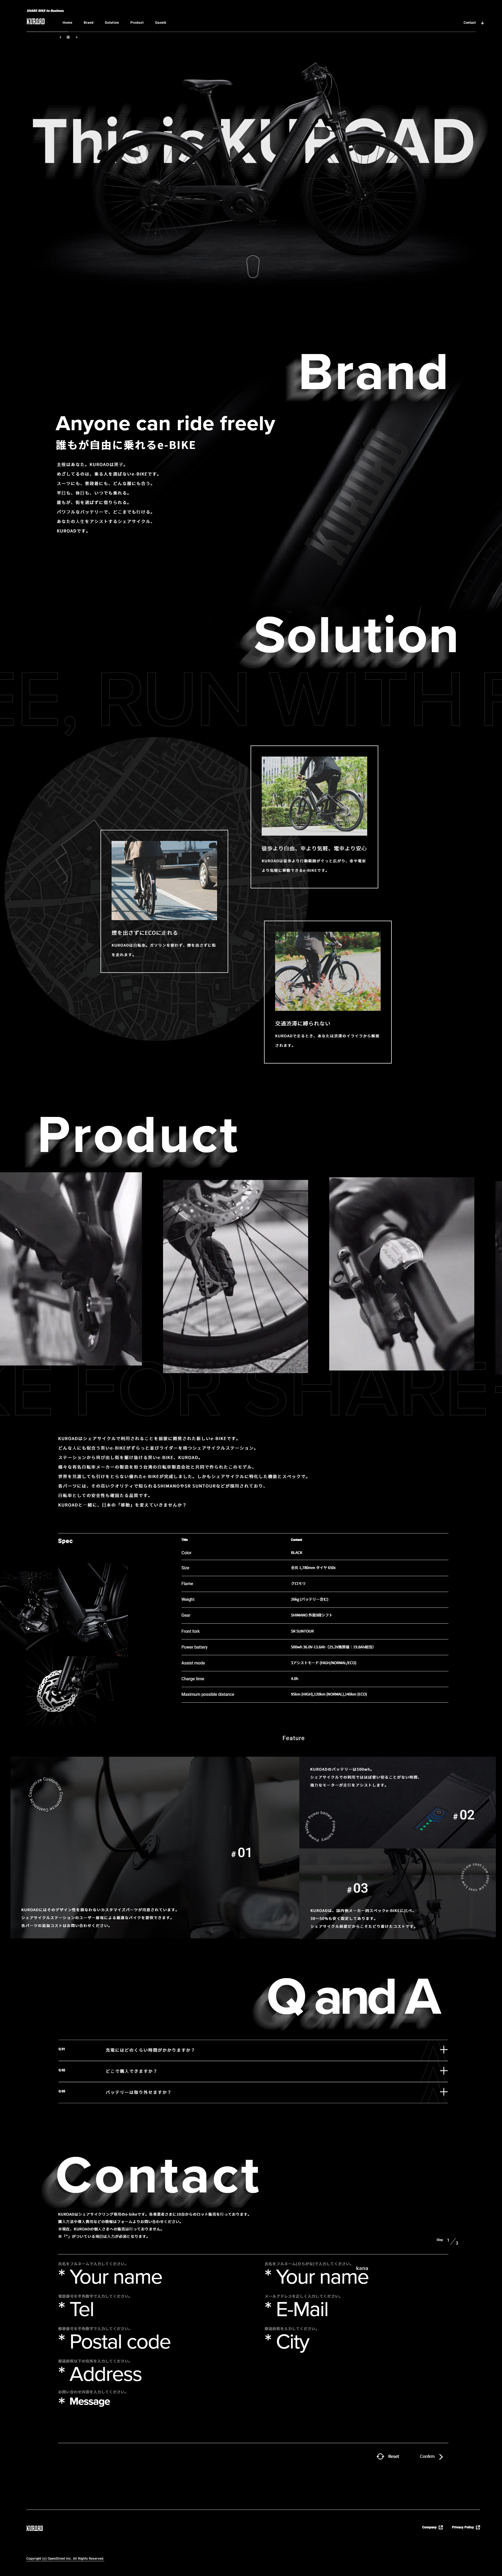 kuroad电动自行车网站设计